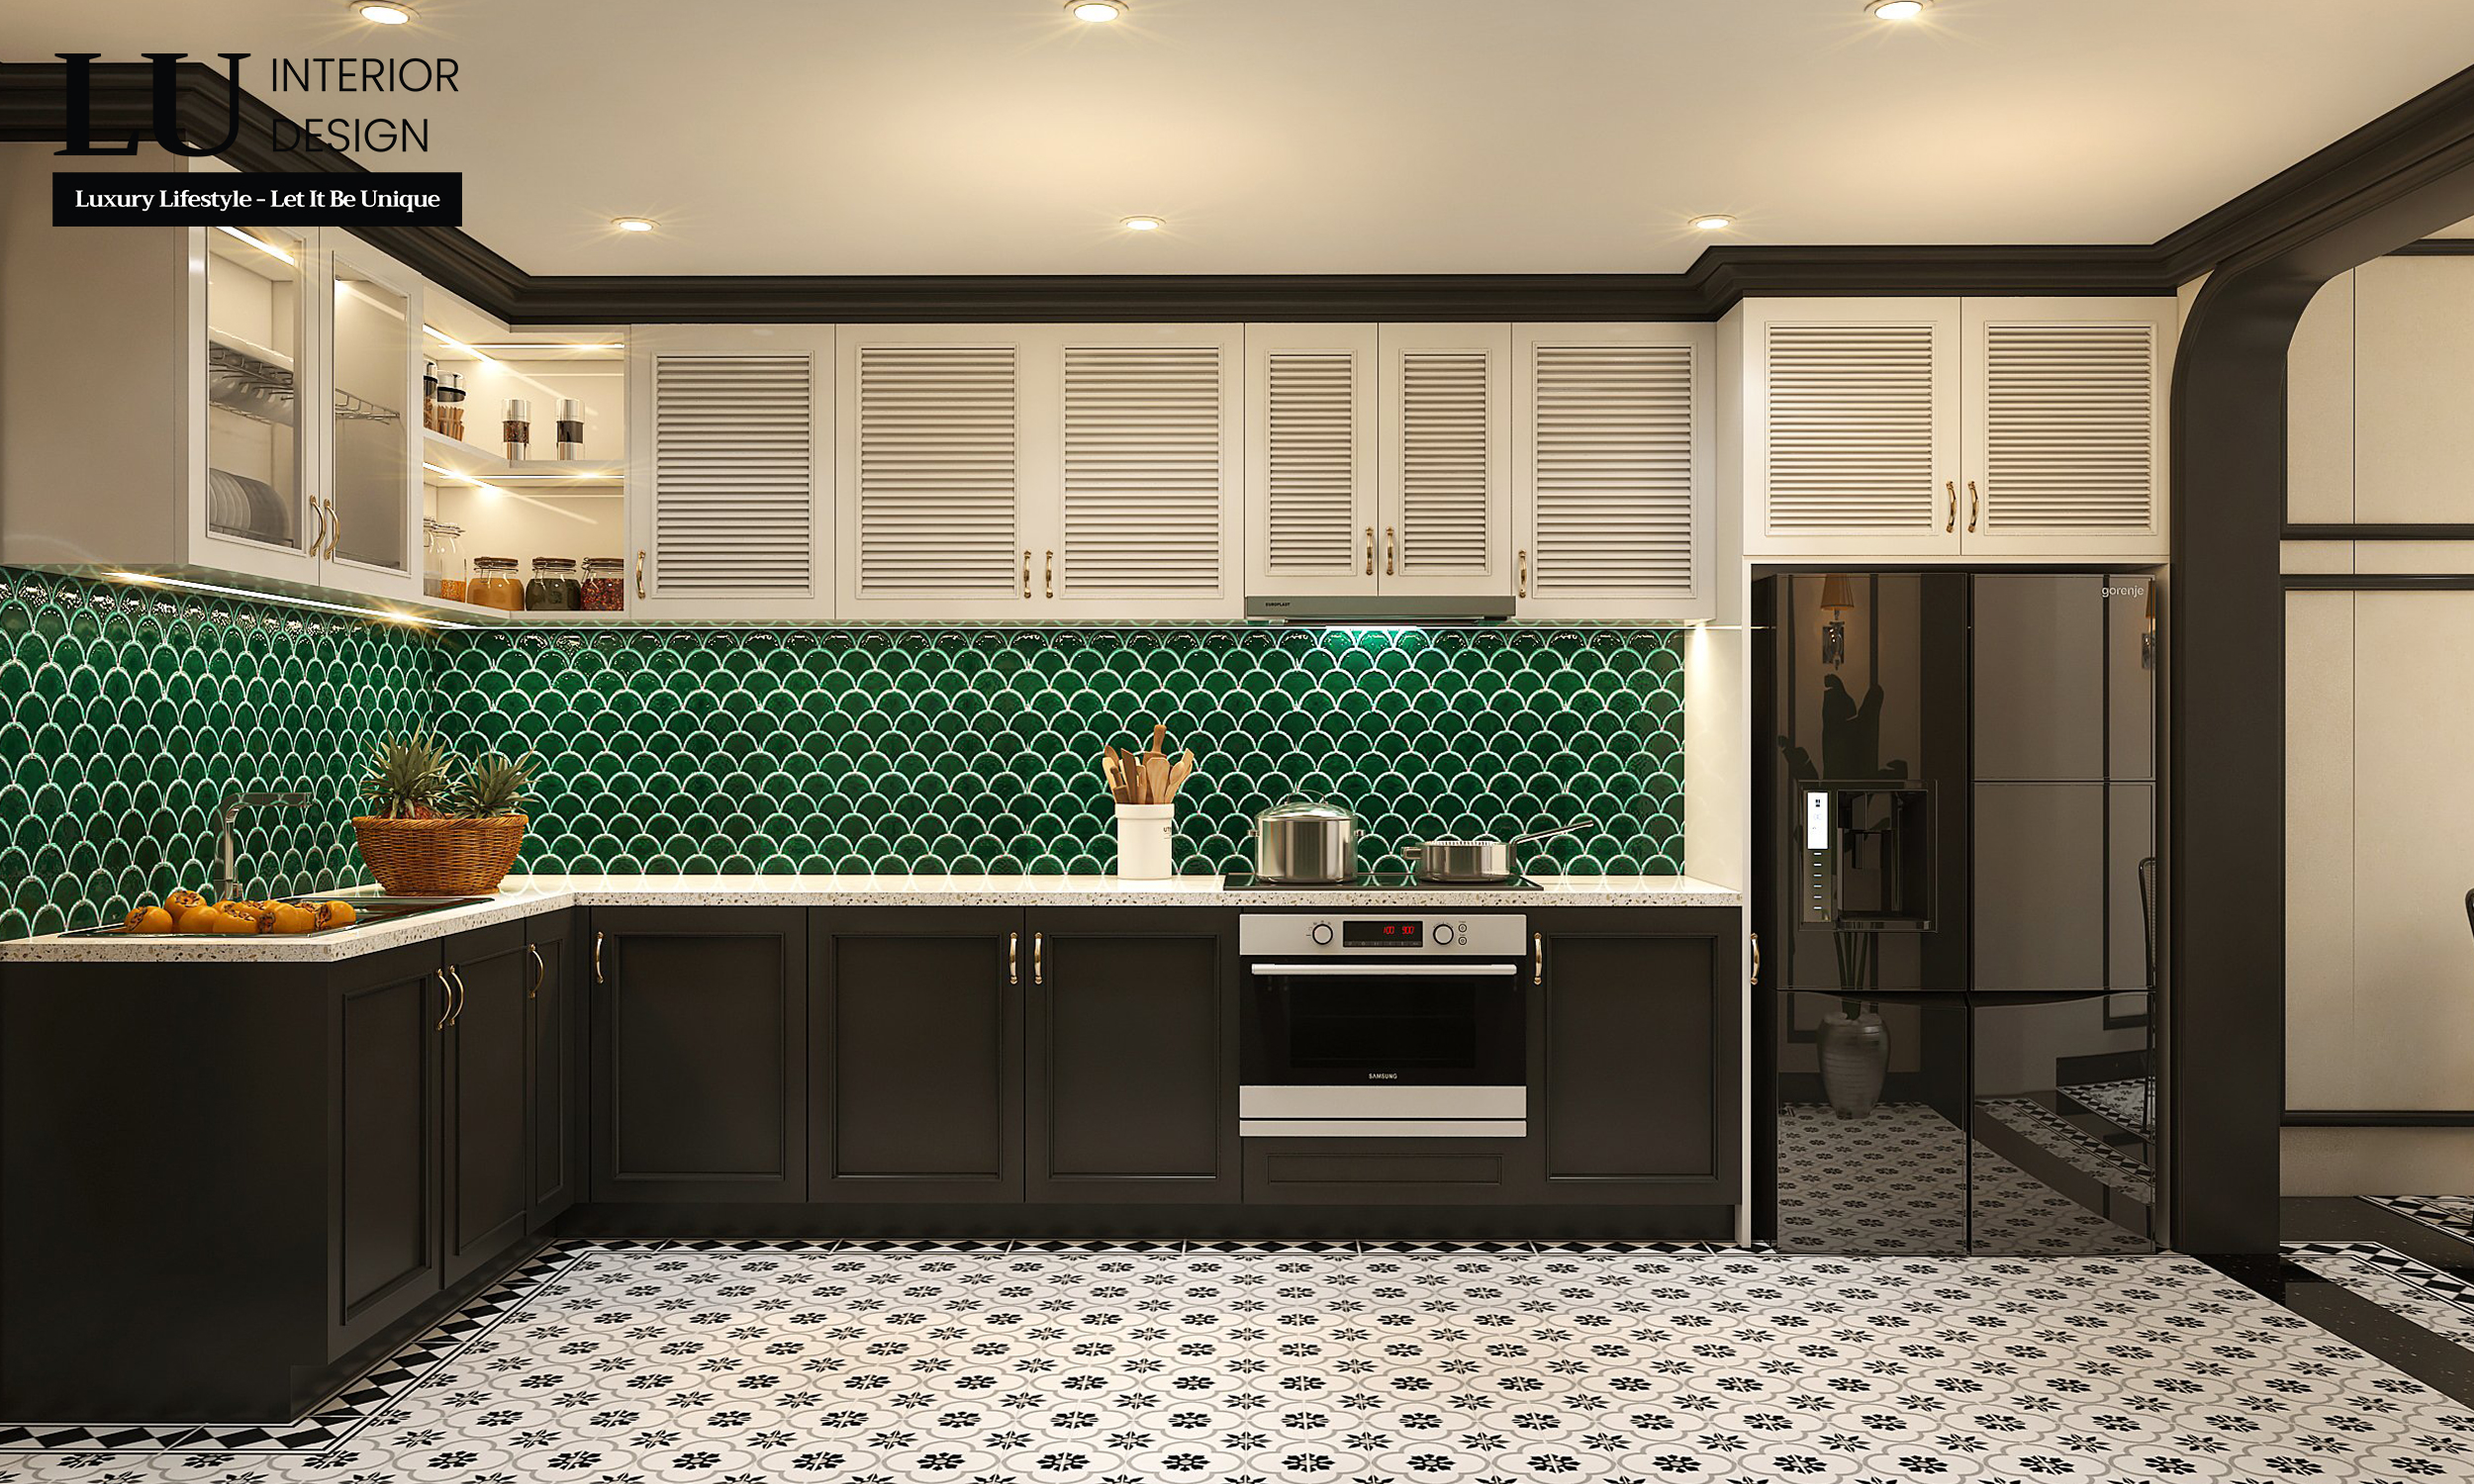 Phòng bếp nổi bật với phần gạch lát tường họa tiết vảy cá xanh mát, đồng bộ với không gian chung. Ảnh: LU Design